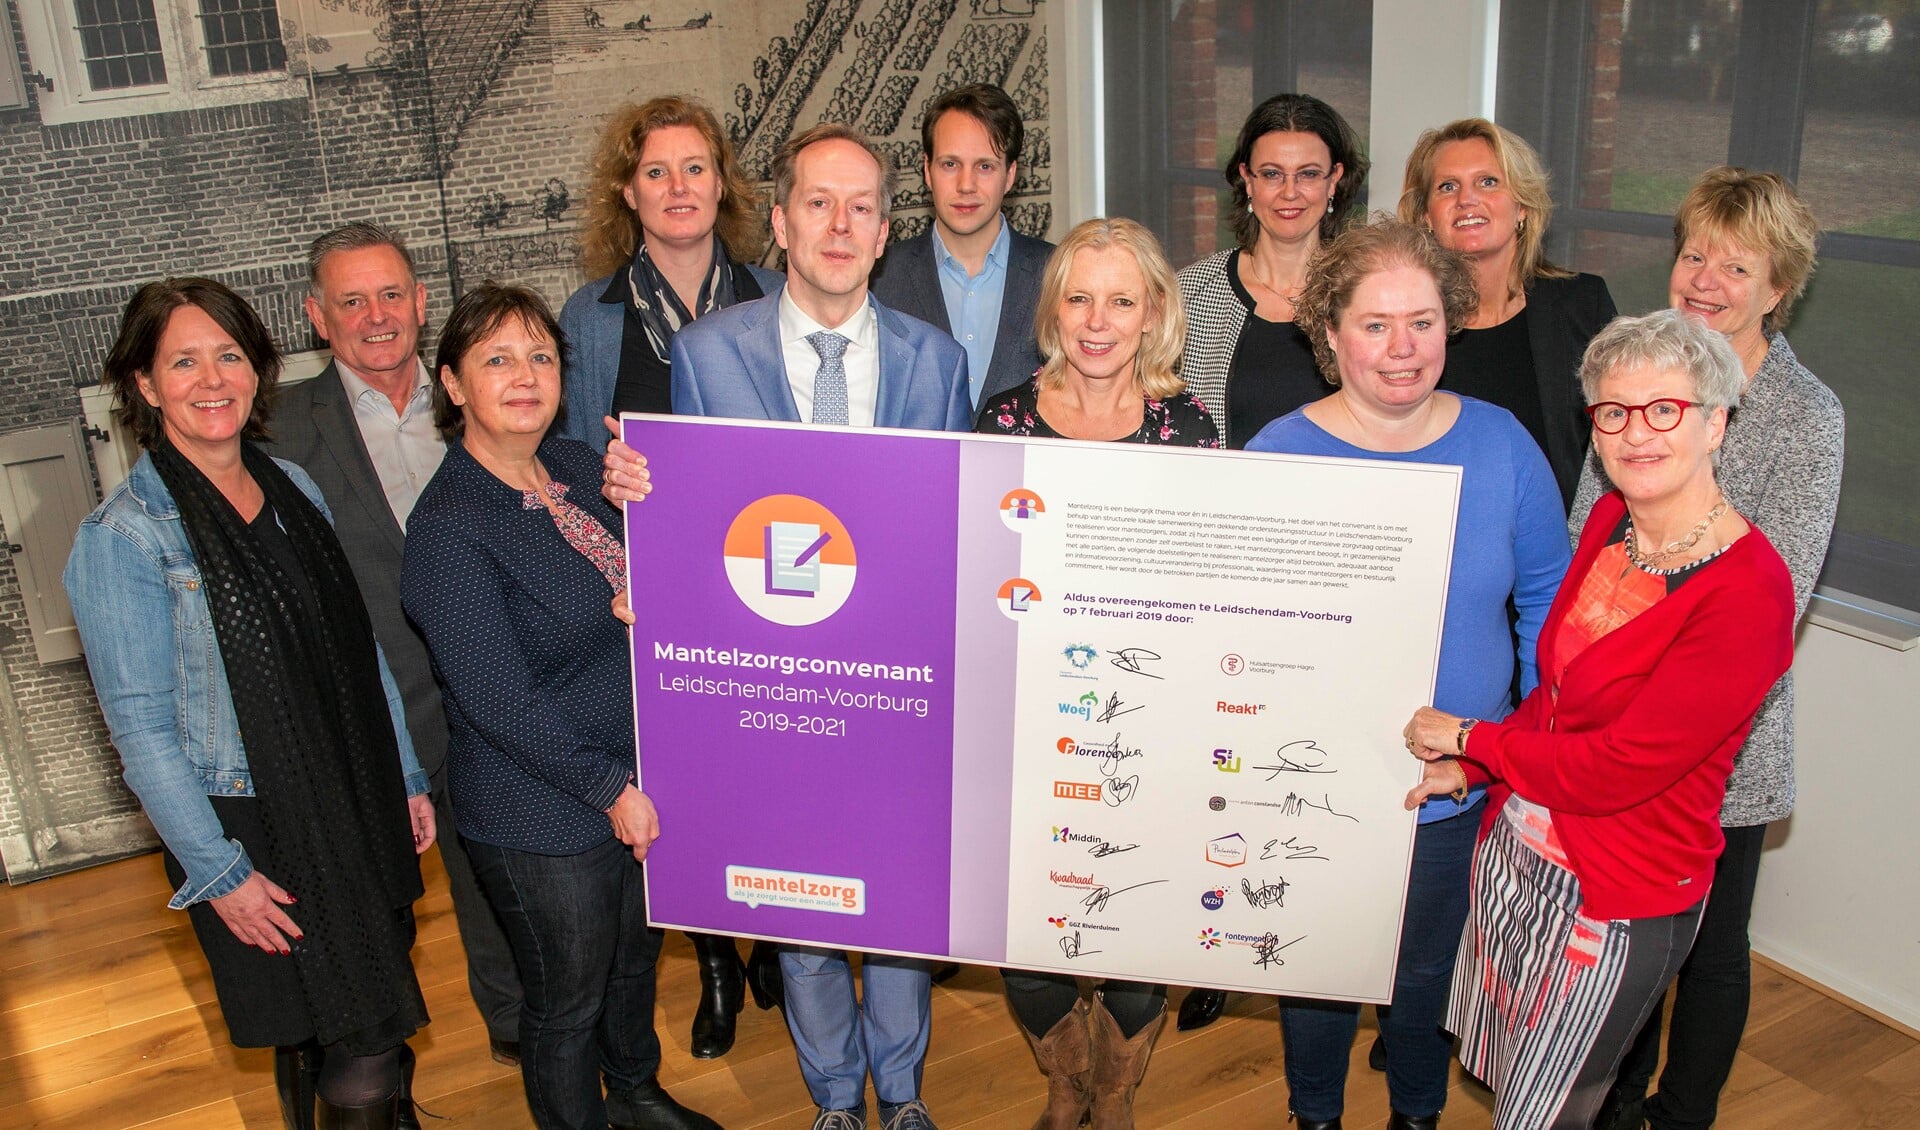 Het Mantelzorgconvenant werd ondertekend door wethouder Rouwendag van de gemeente Leidschendam-Voorburg en 13 partners (foto: gemeente LDVB).